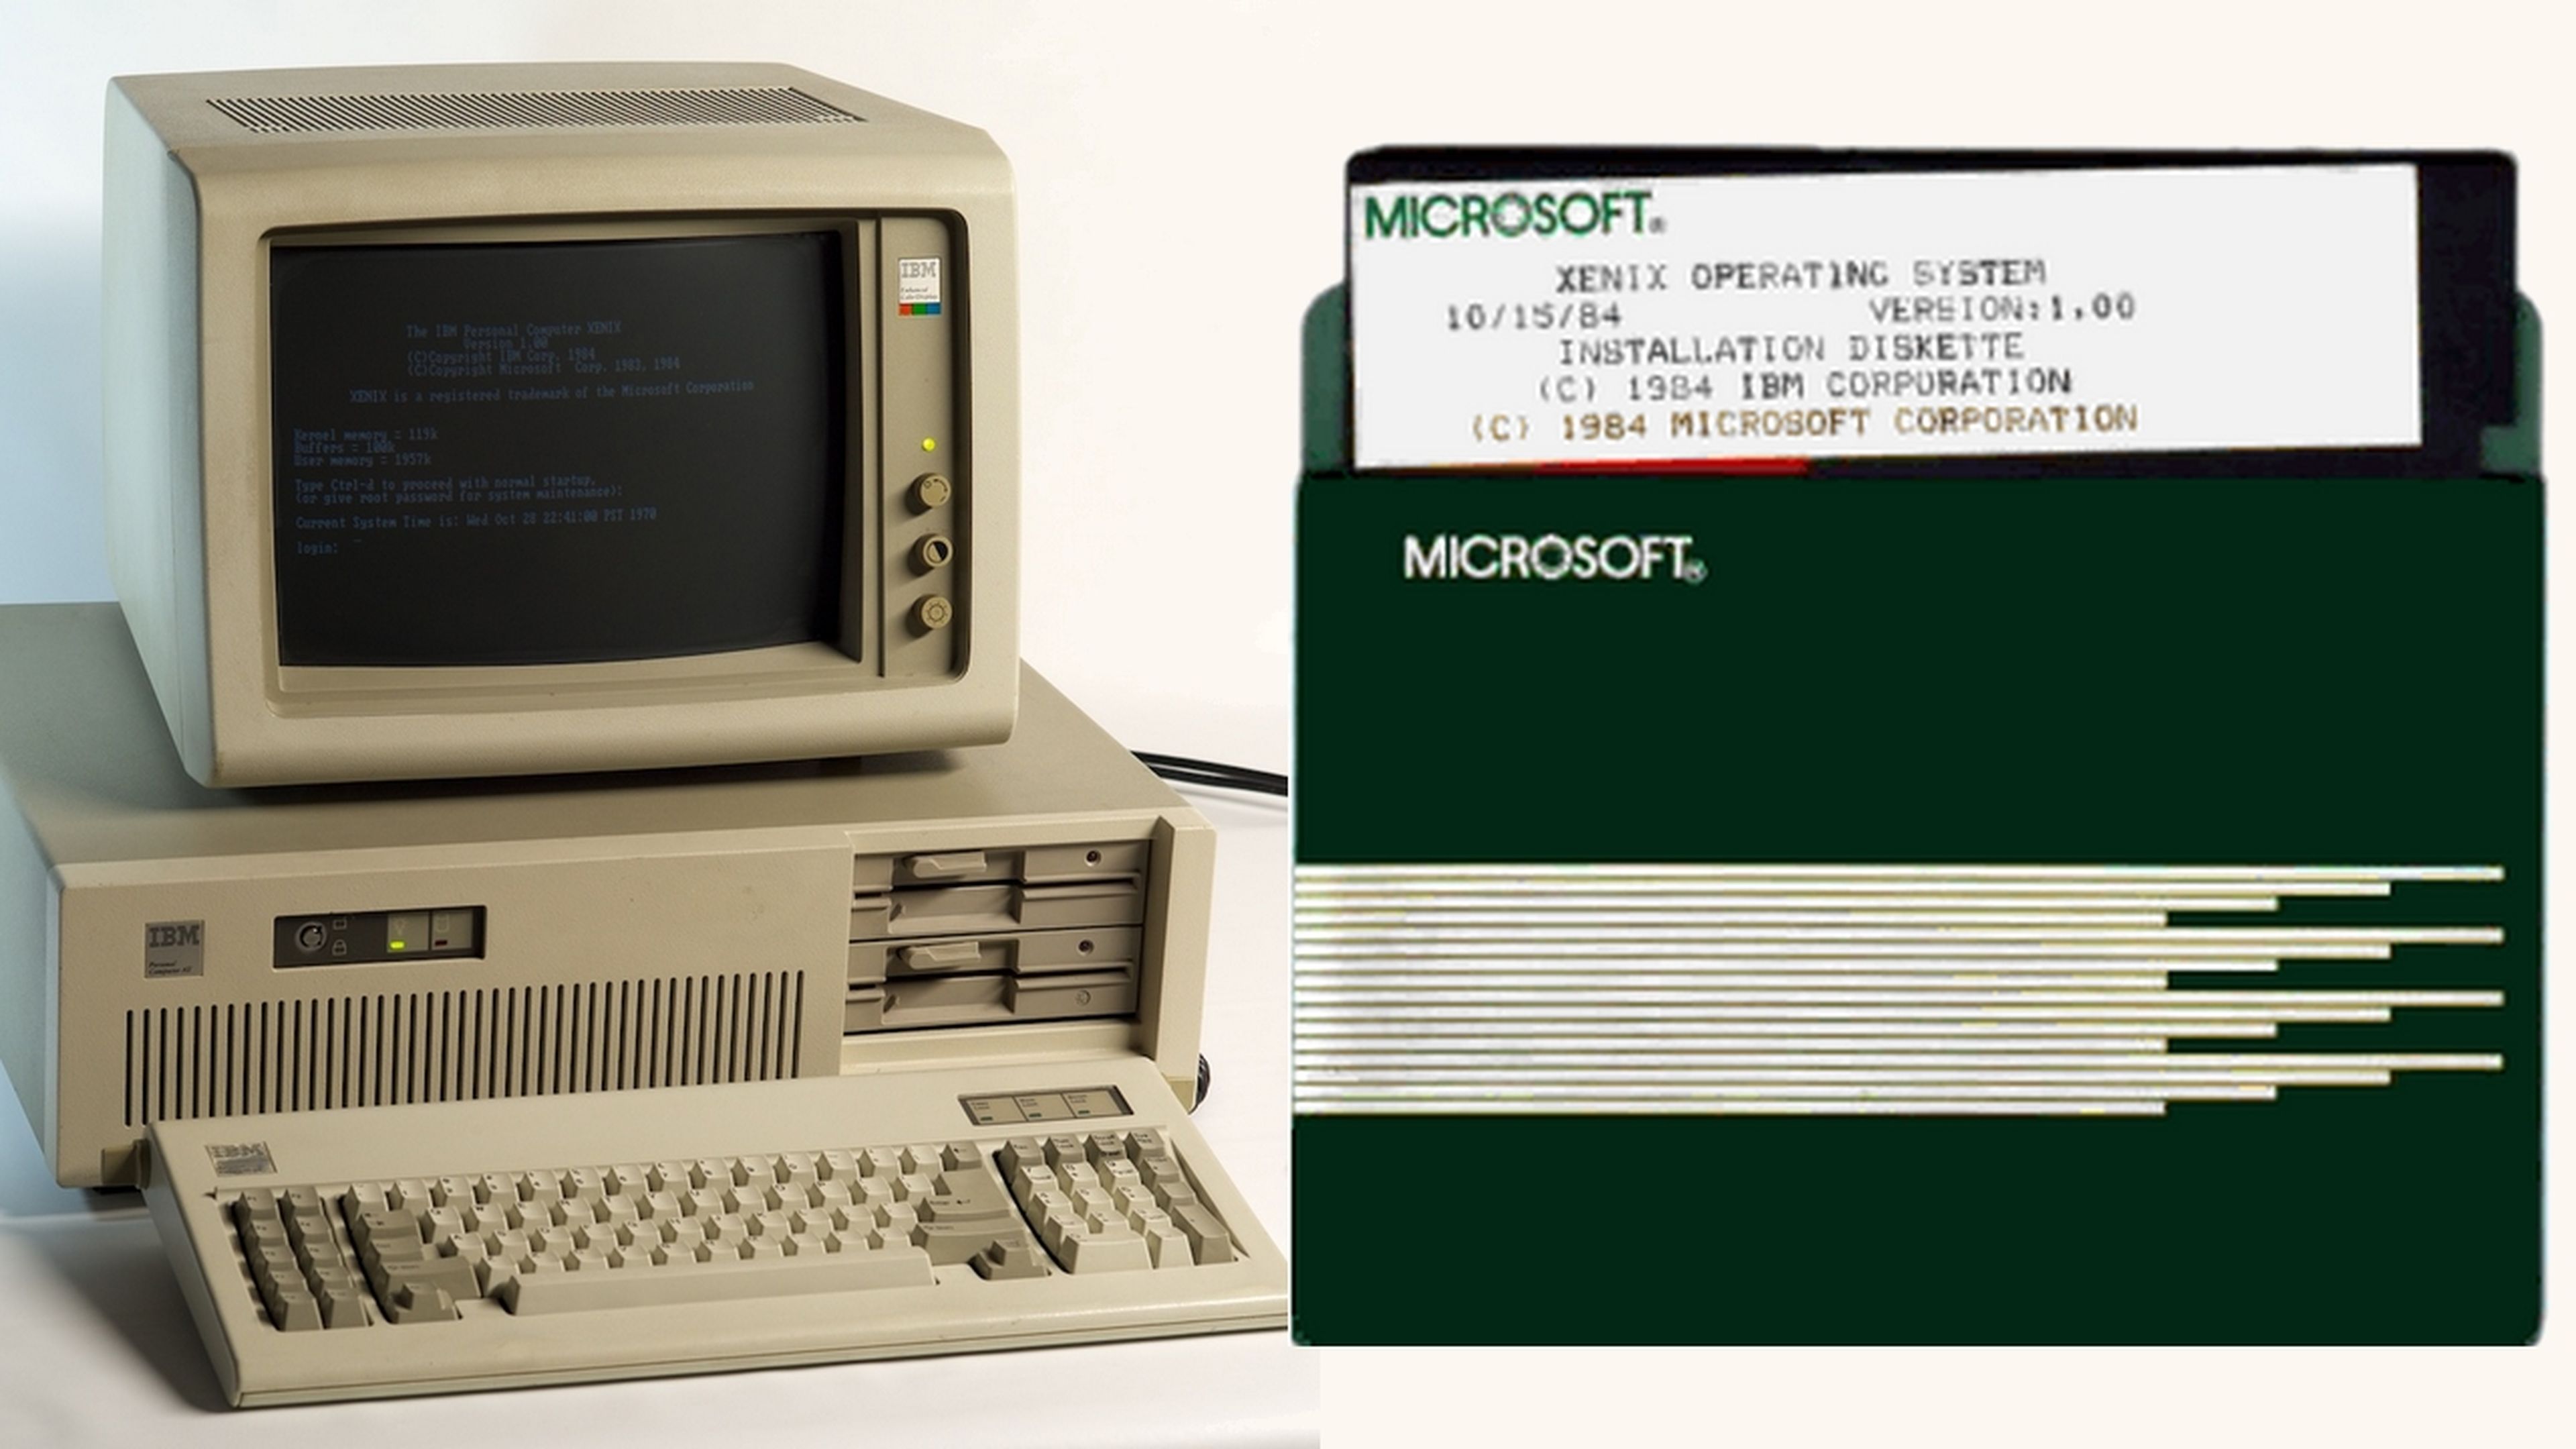 Así era Xenix, el primer sistema operativo de Microsoft, antes de MS-DOS y Windows